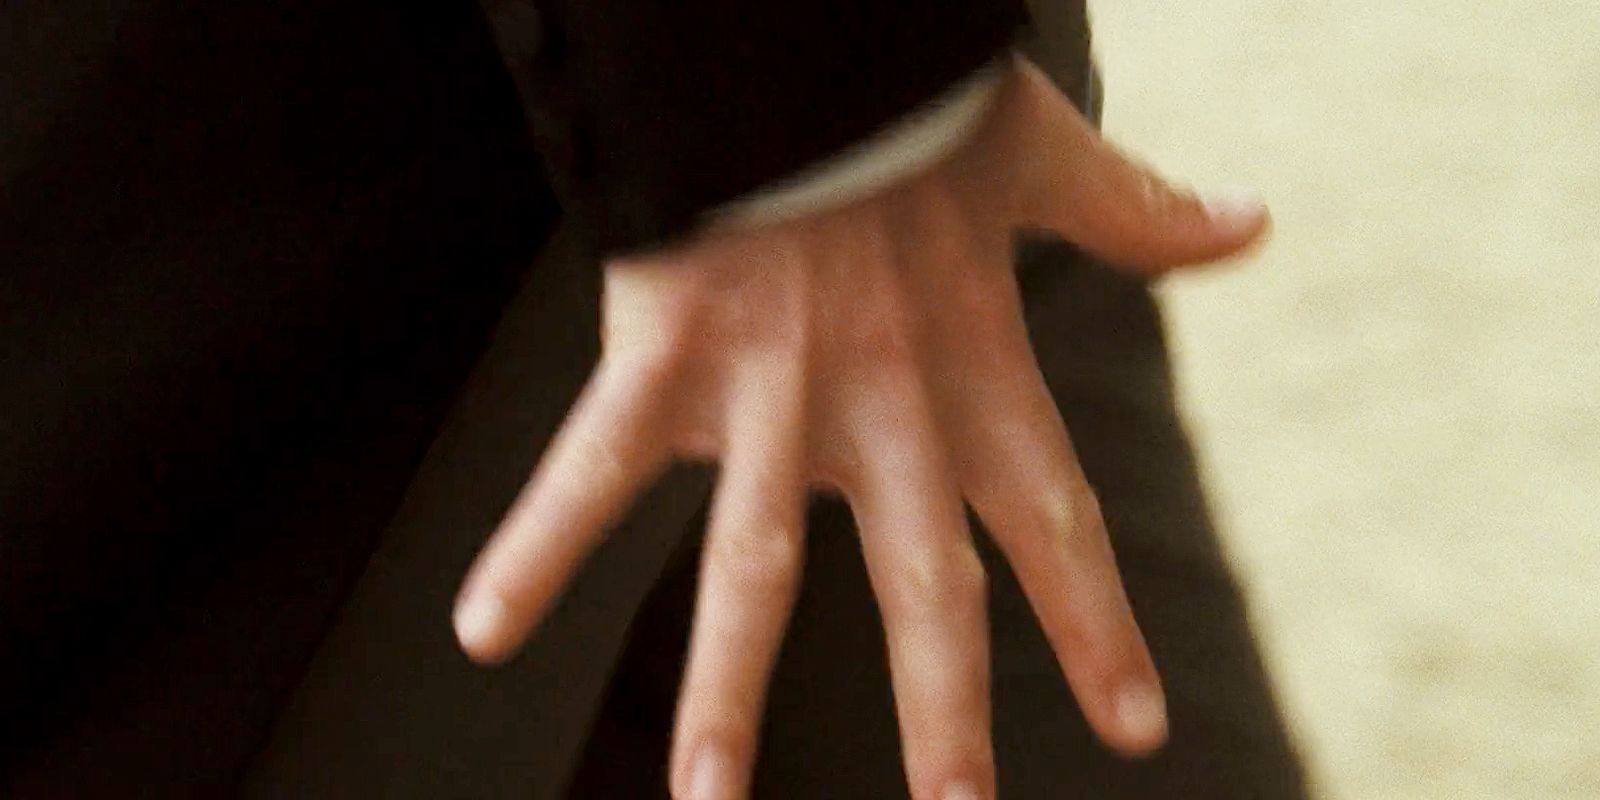 Matthew Macfayden in the hand flex scene in Pride &amp; Prejudice - shot of the hand.